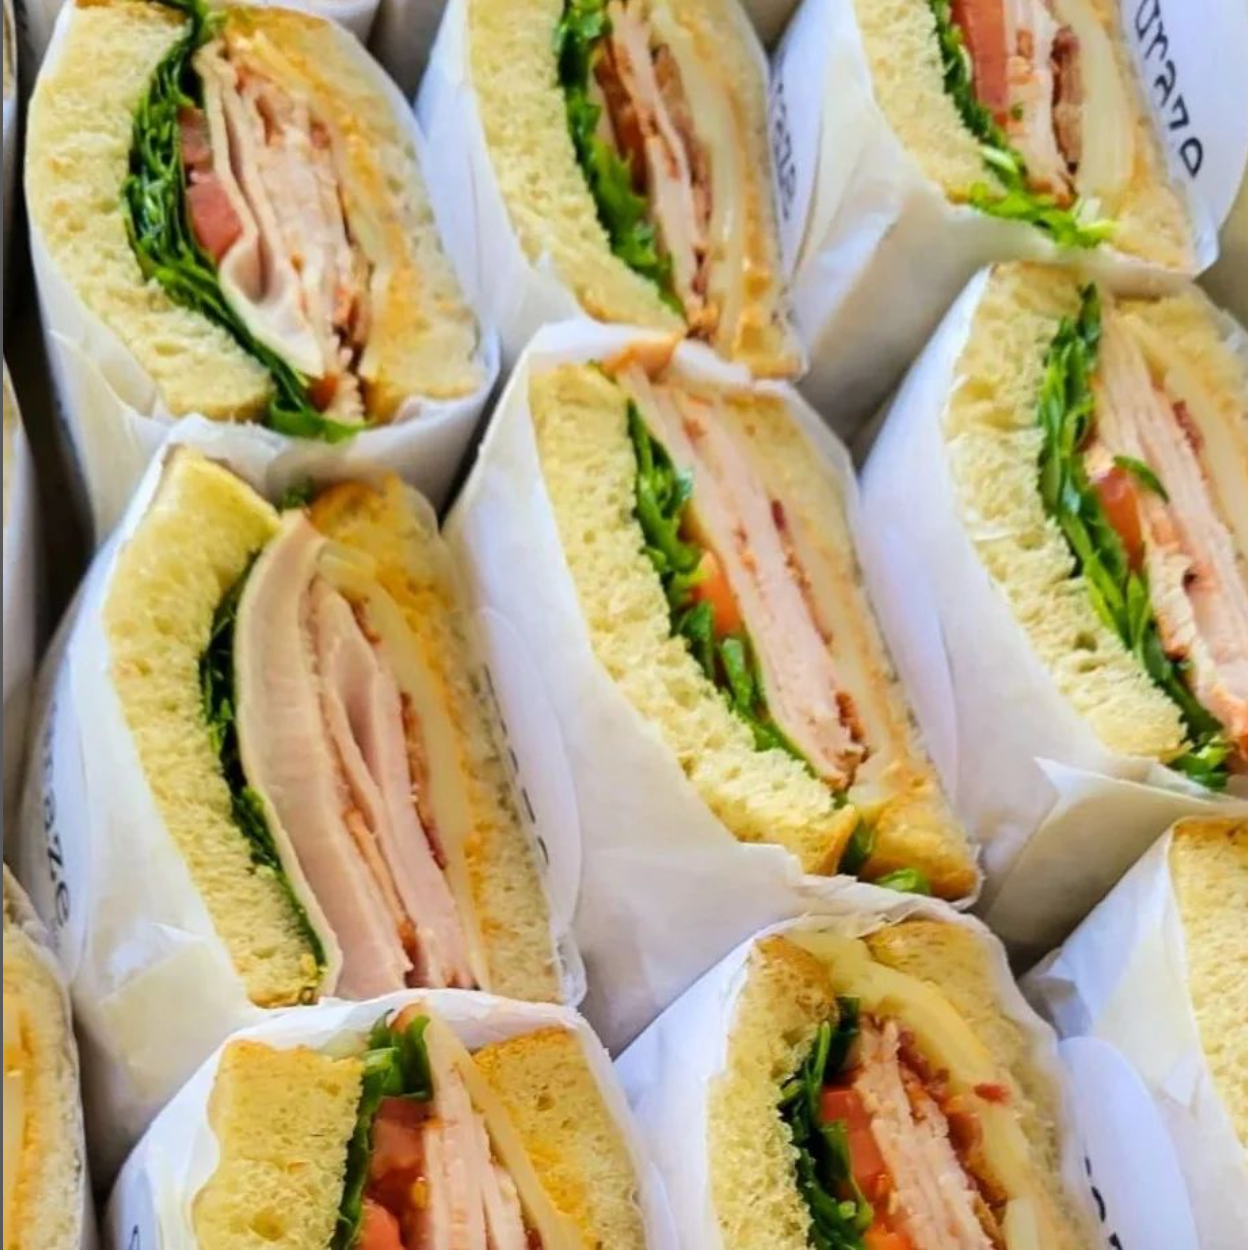 Sandwiches + Salads